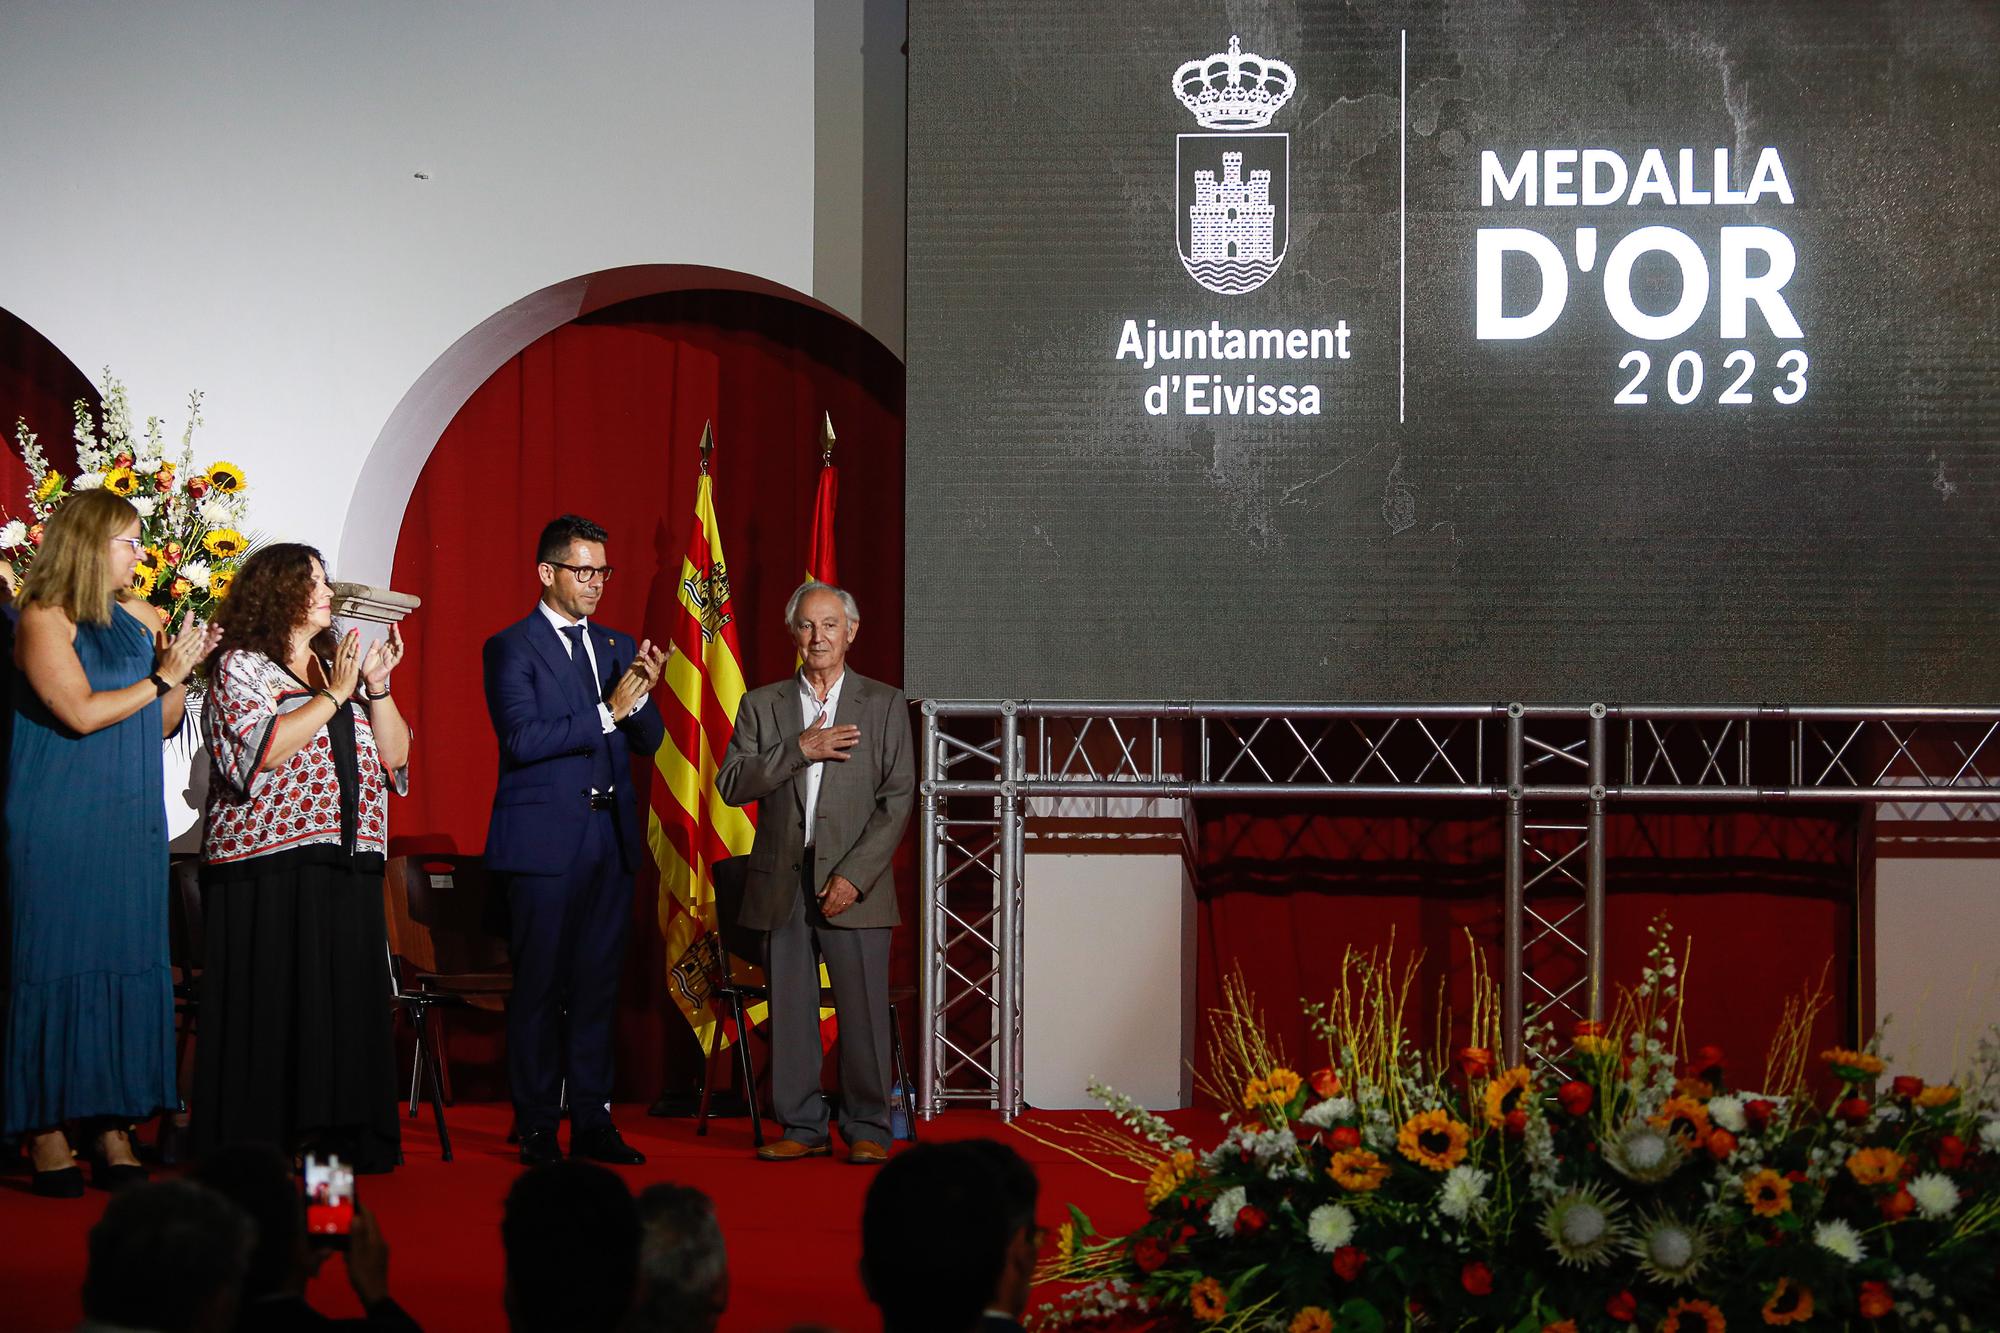 Medalla de Oro a Manuel Ramón Mas, el artífice musical de Ibiza